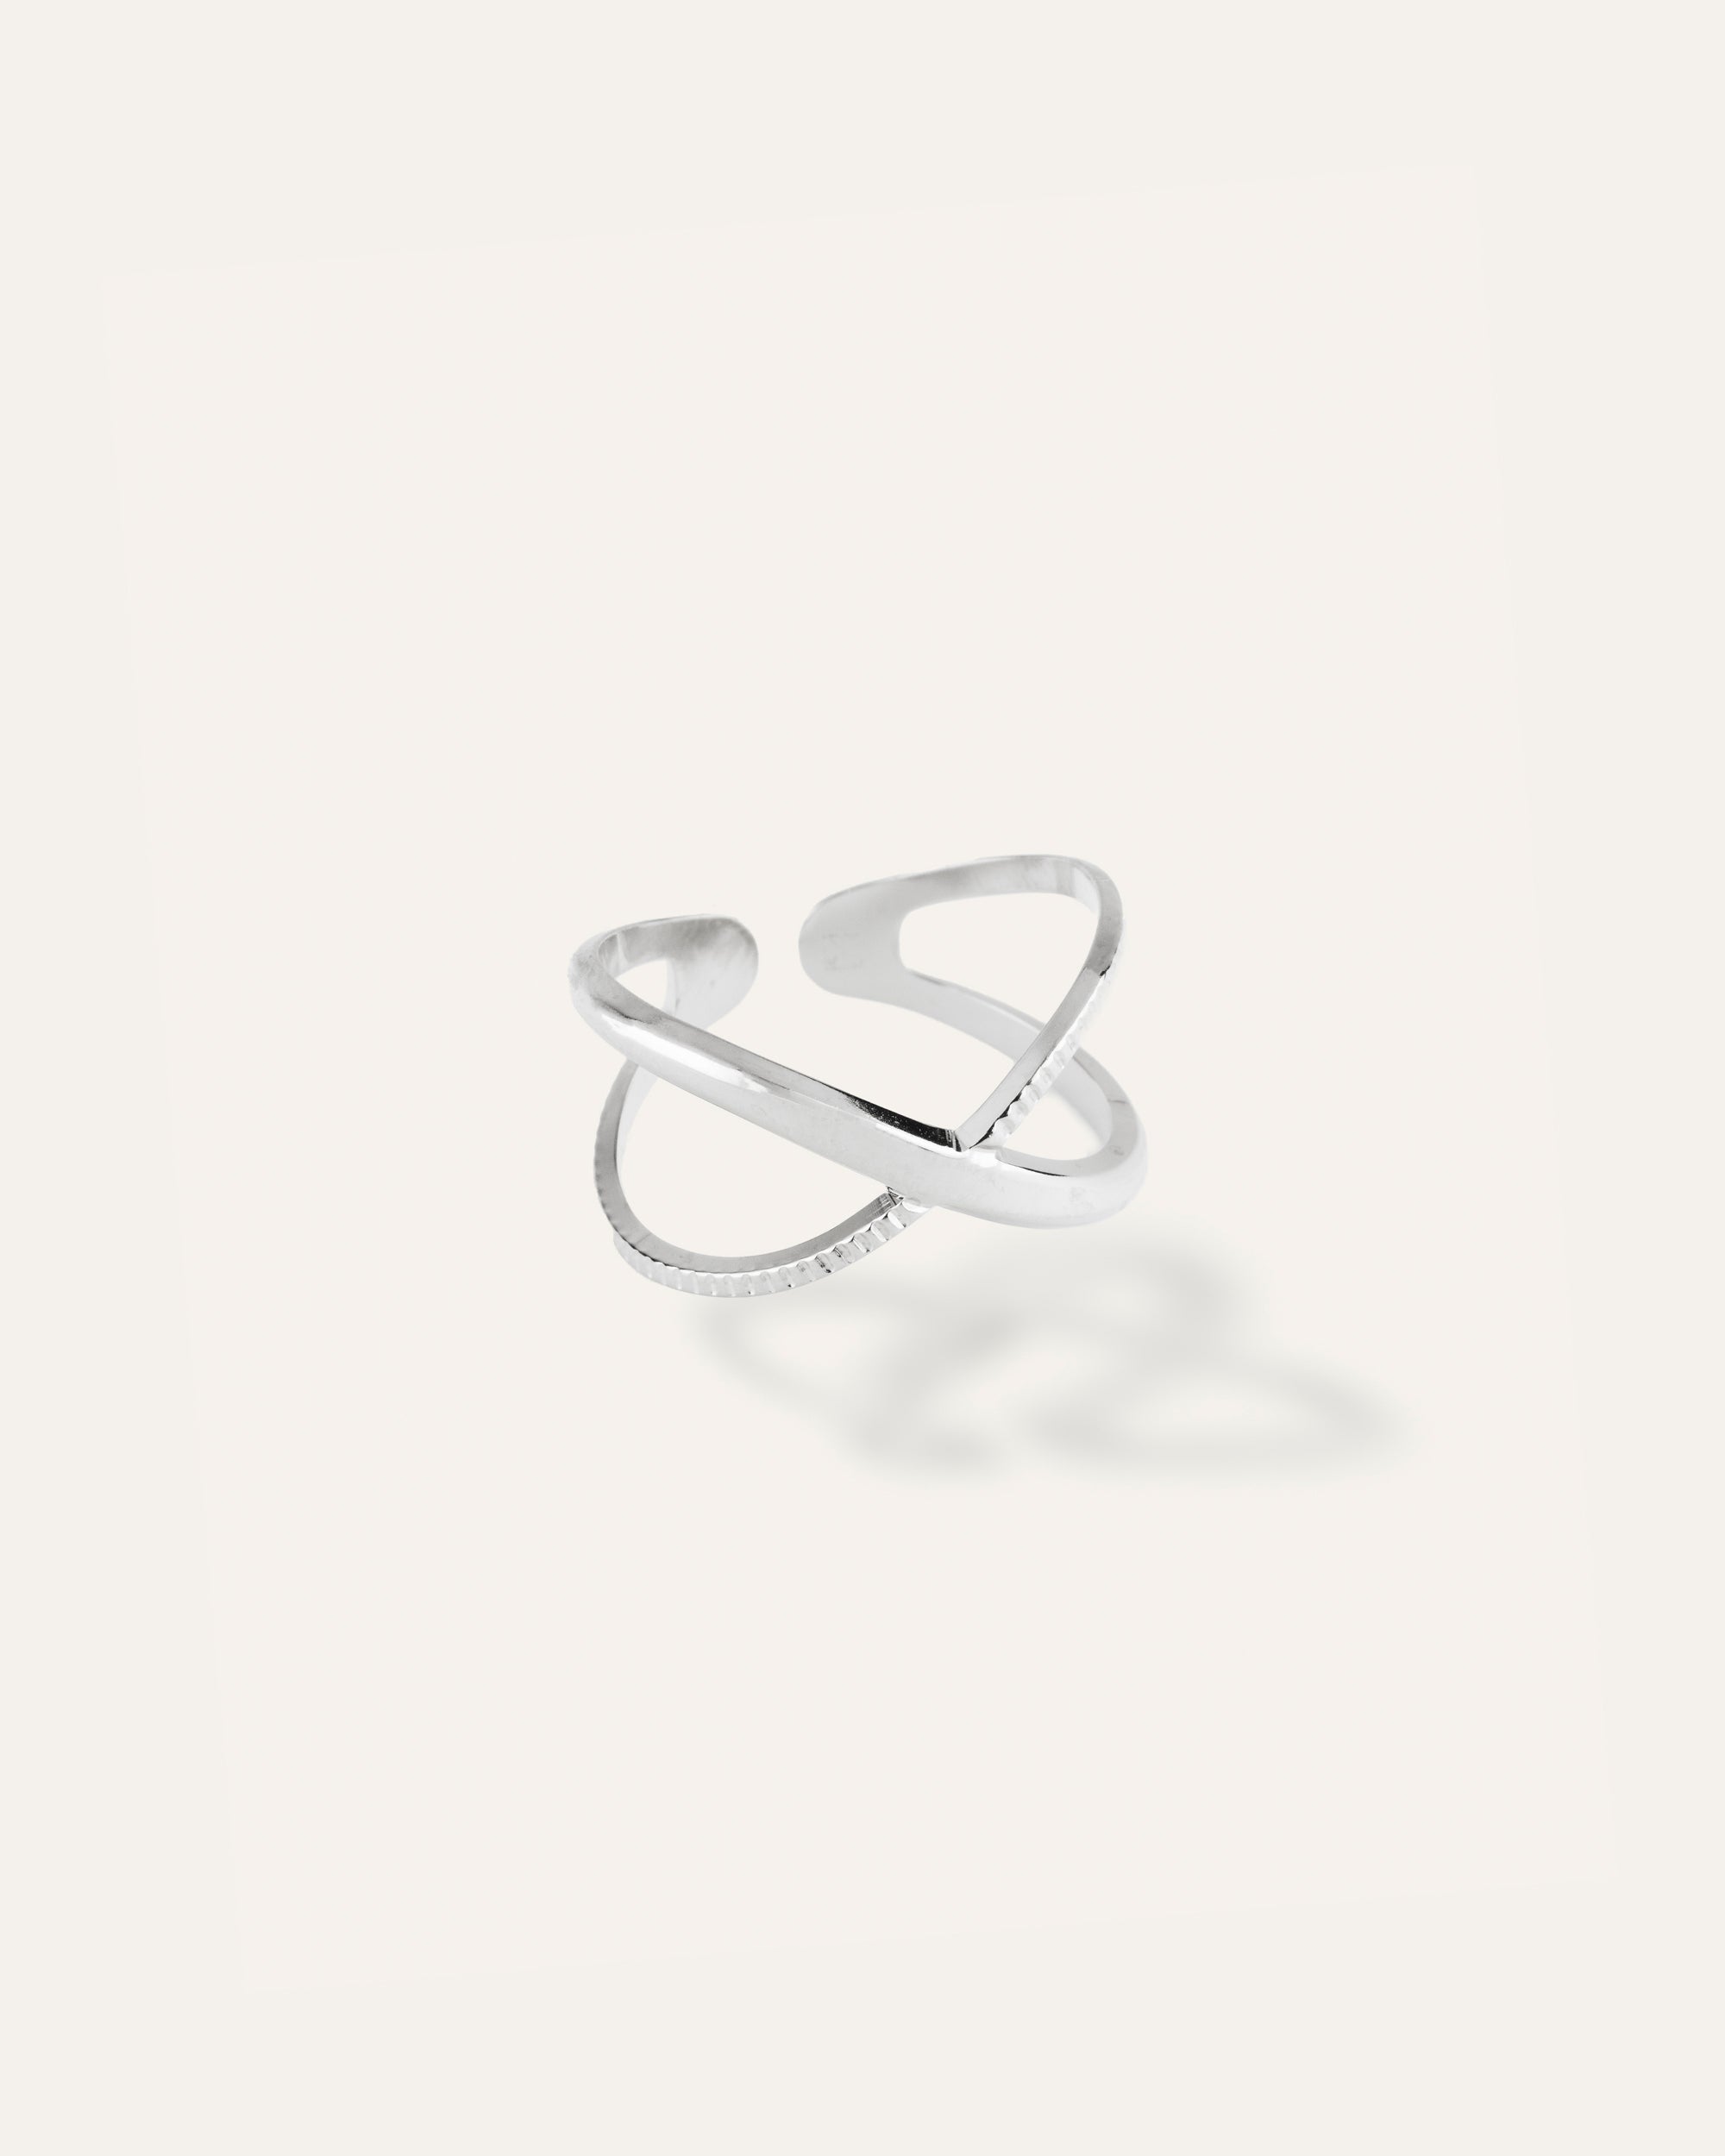 Dahlia silver ring